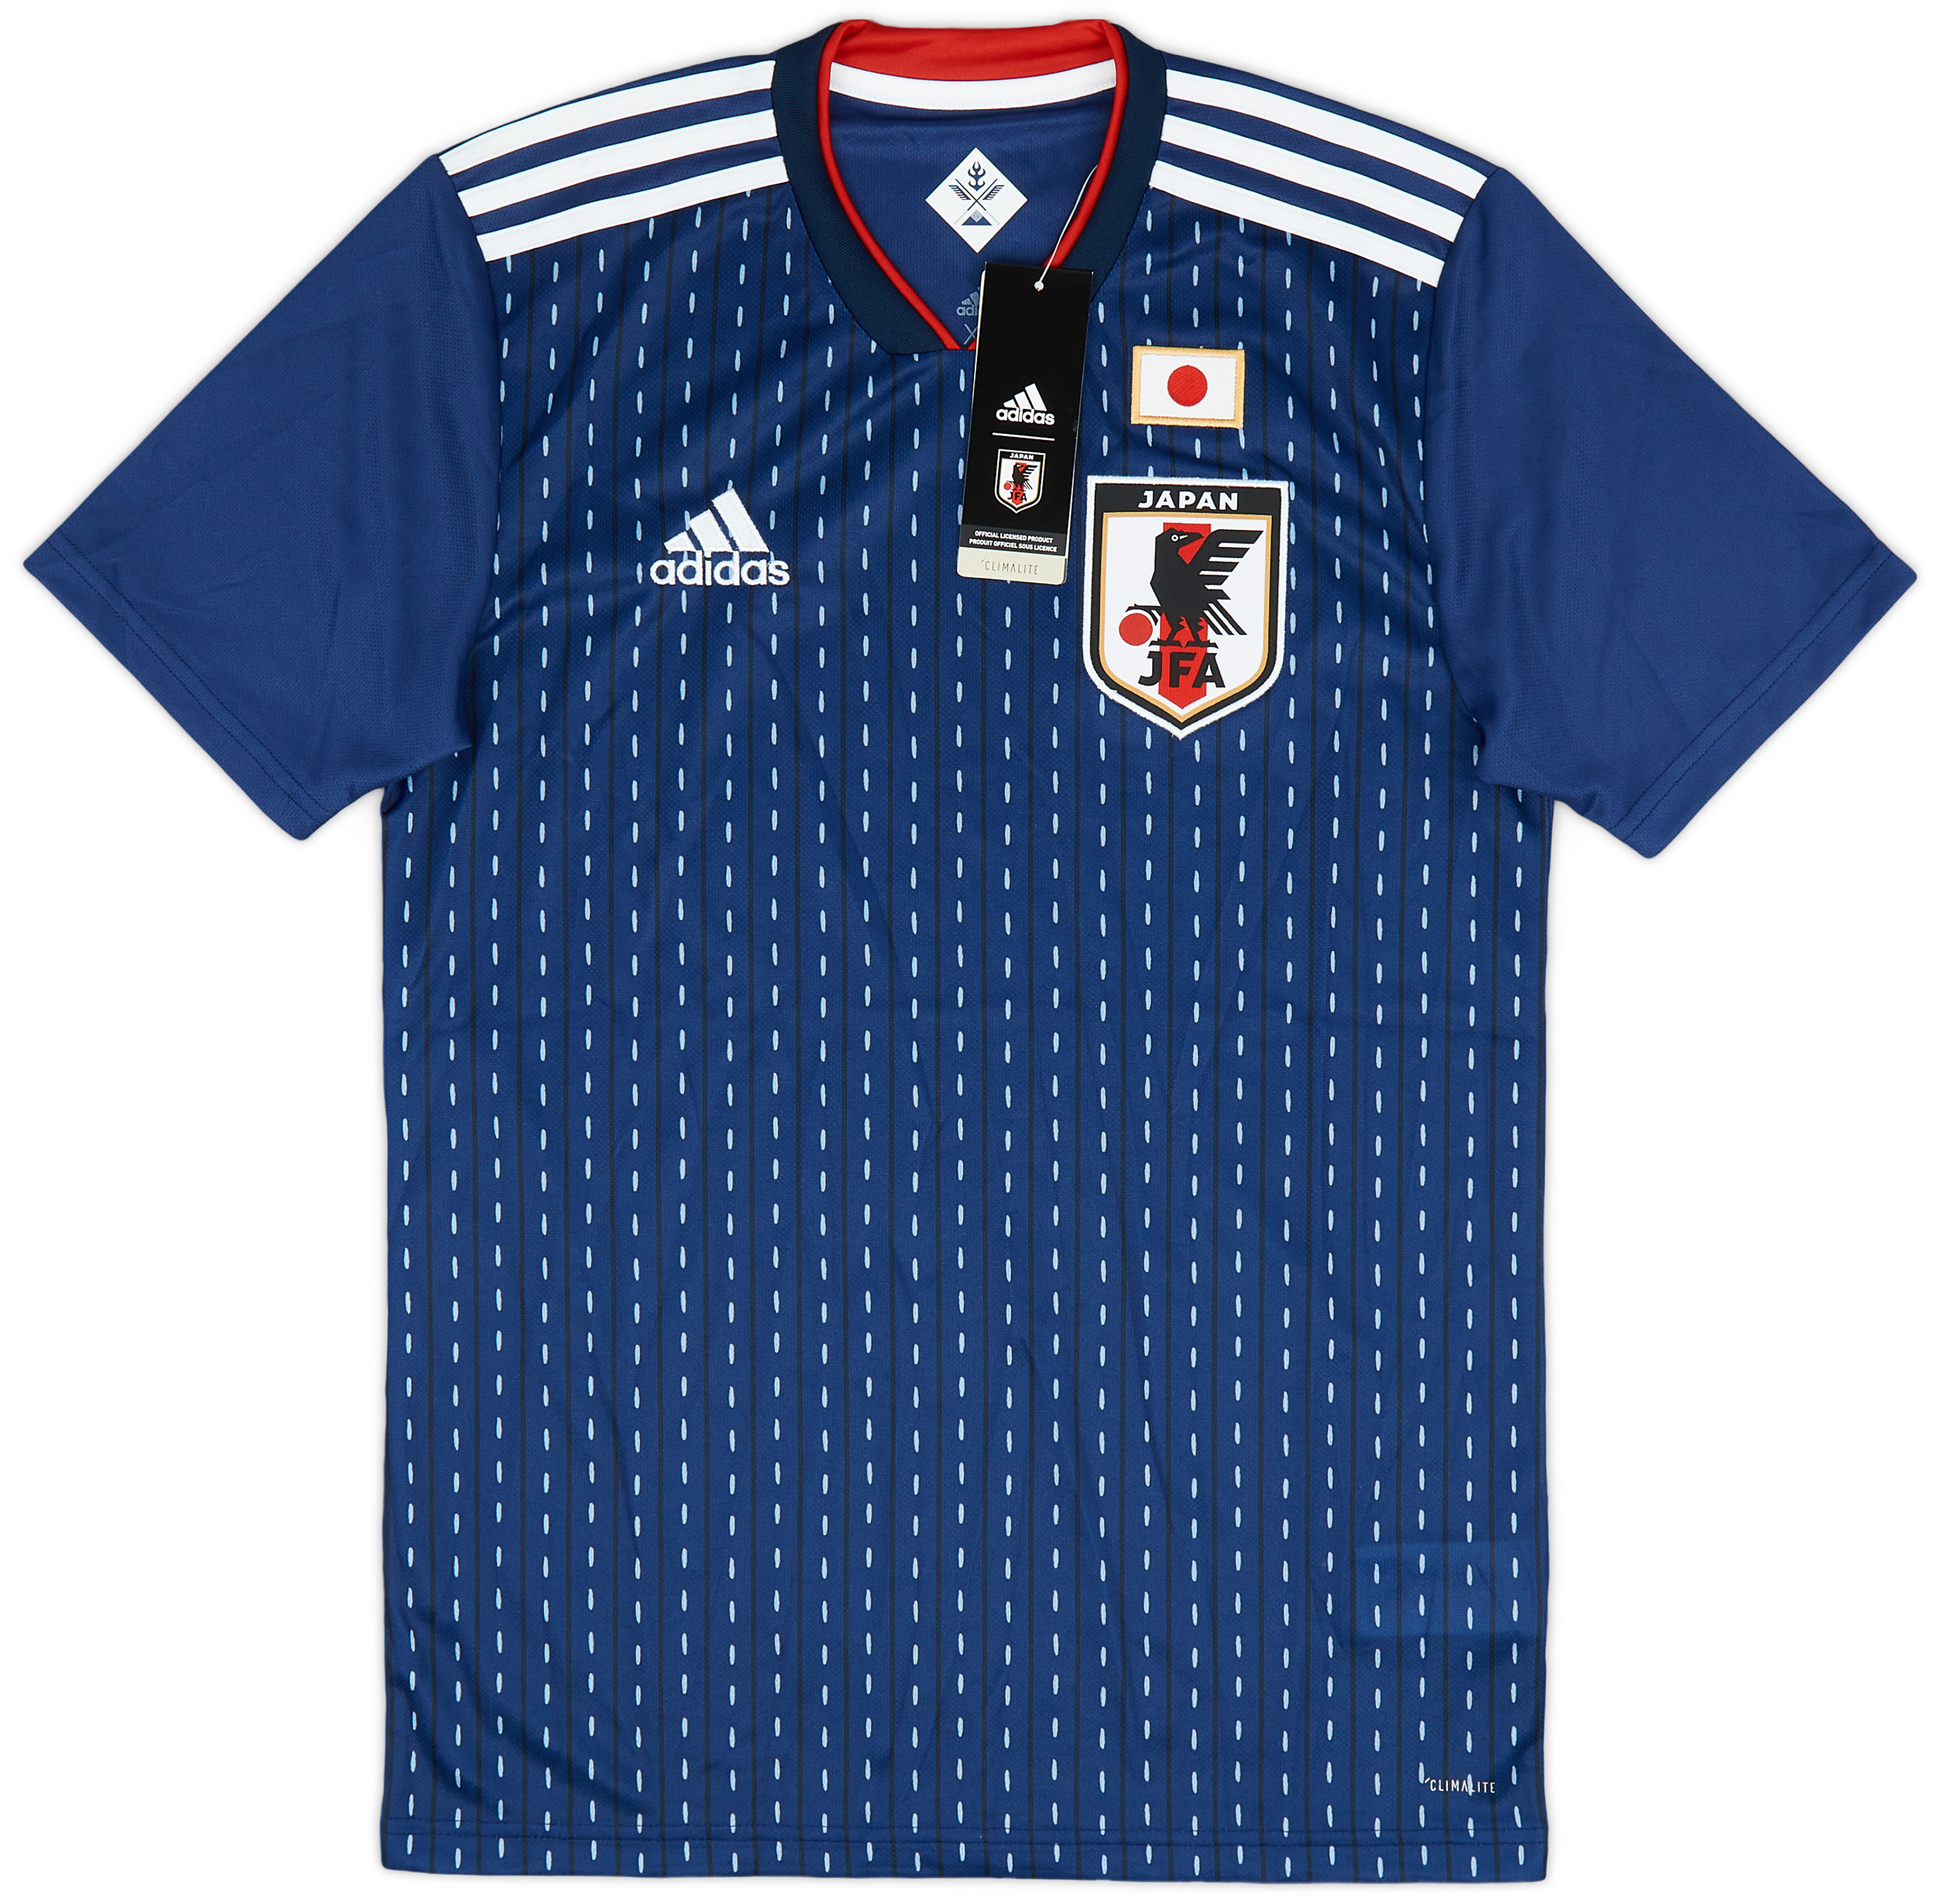 Japan  home shirt (Original)